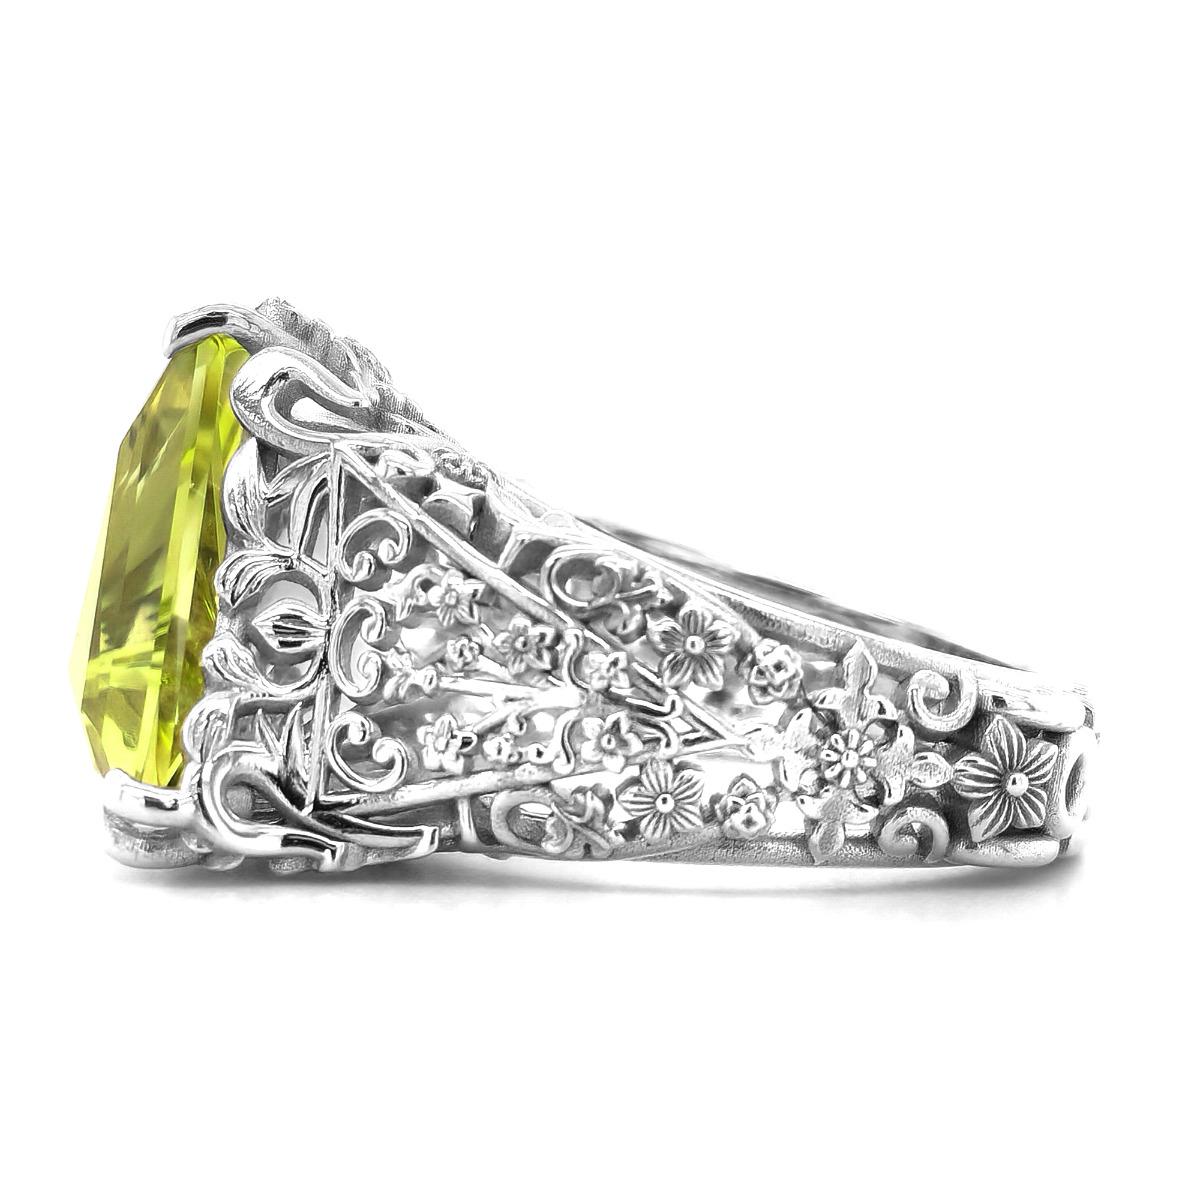 Serti dans de l'or blanc 18 carats, ce béryl jaune verdâtre, à la fois chaud et brillant, est une pierre précieuse qu'elle adorera. Joyau bien taillé, sa majesté la fera rougir de couleur. De forme triangulaire, une coupe qui flatte facilement, des